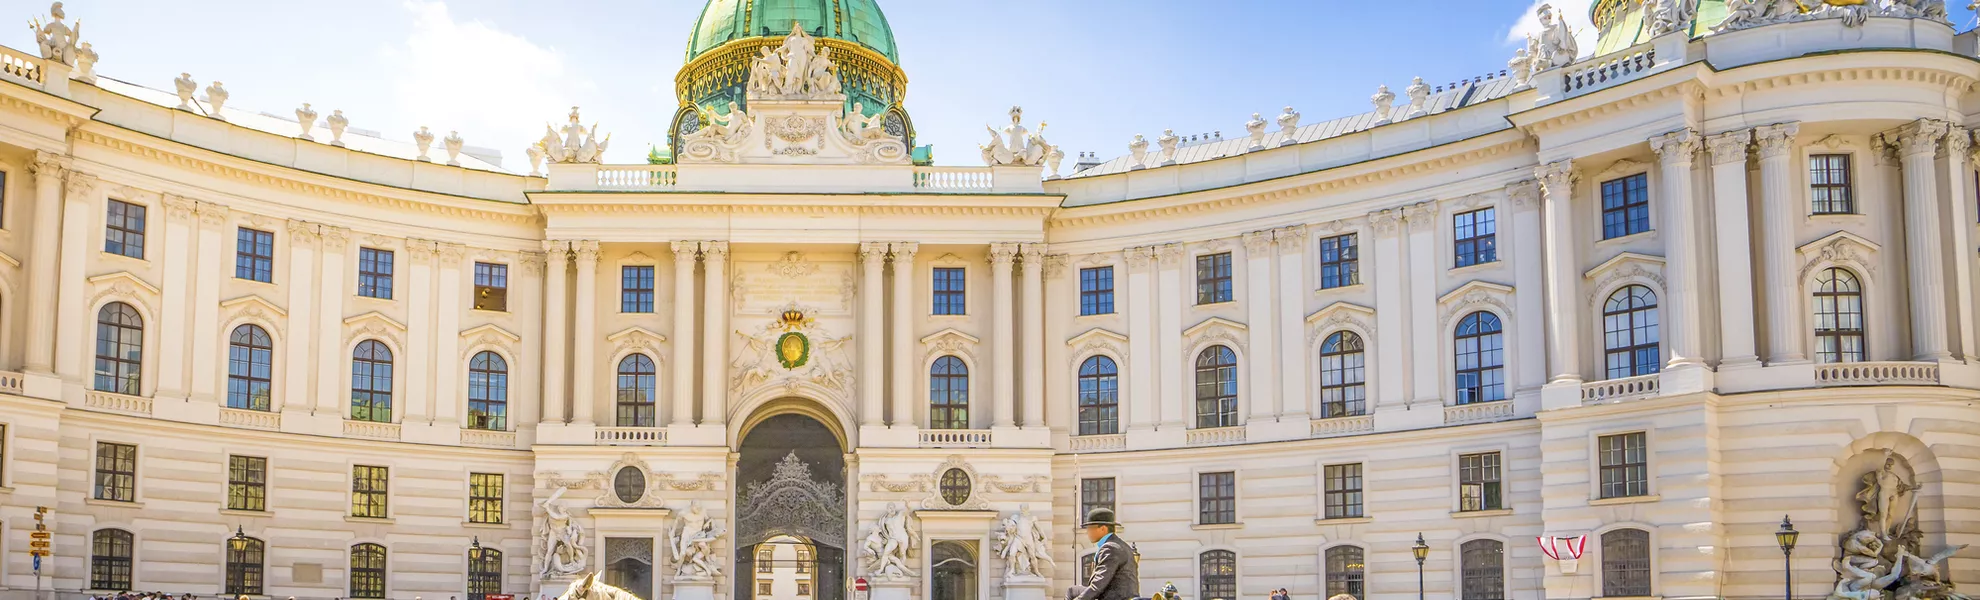 Alte Hofburg, Wien - © pure-life-pictures - Fotolia